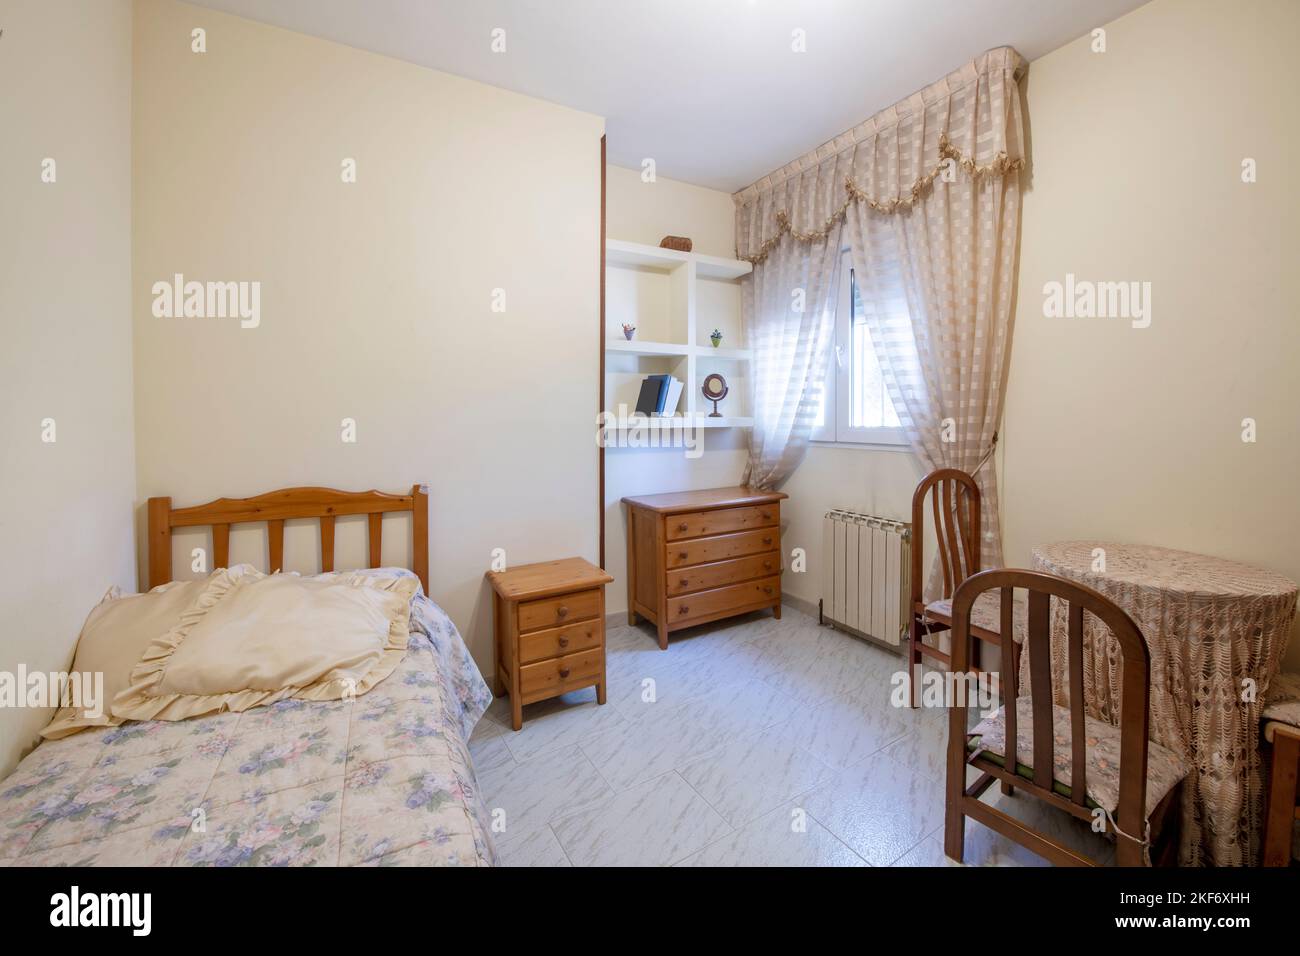 cette chambre comprend un petit lit double avec des meubles en pin de couleur miel et une table de chevet avec des chaises assorties Banque D'Images